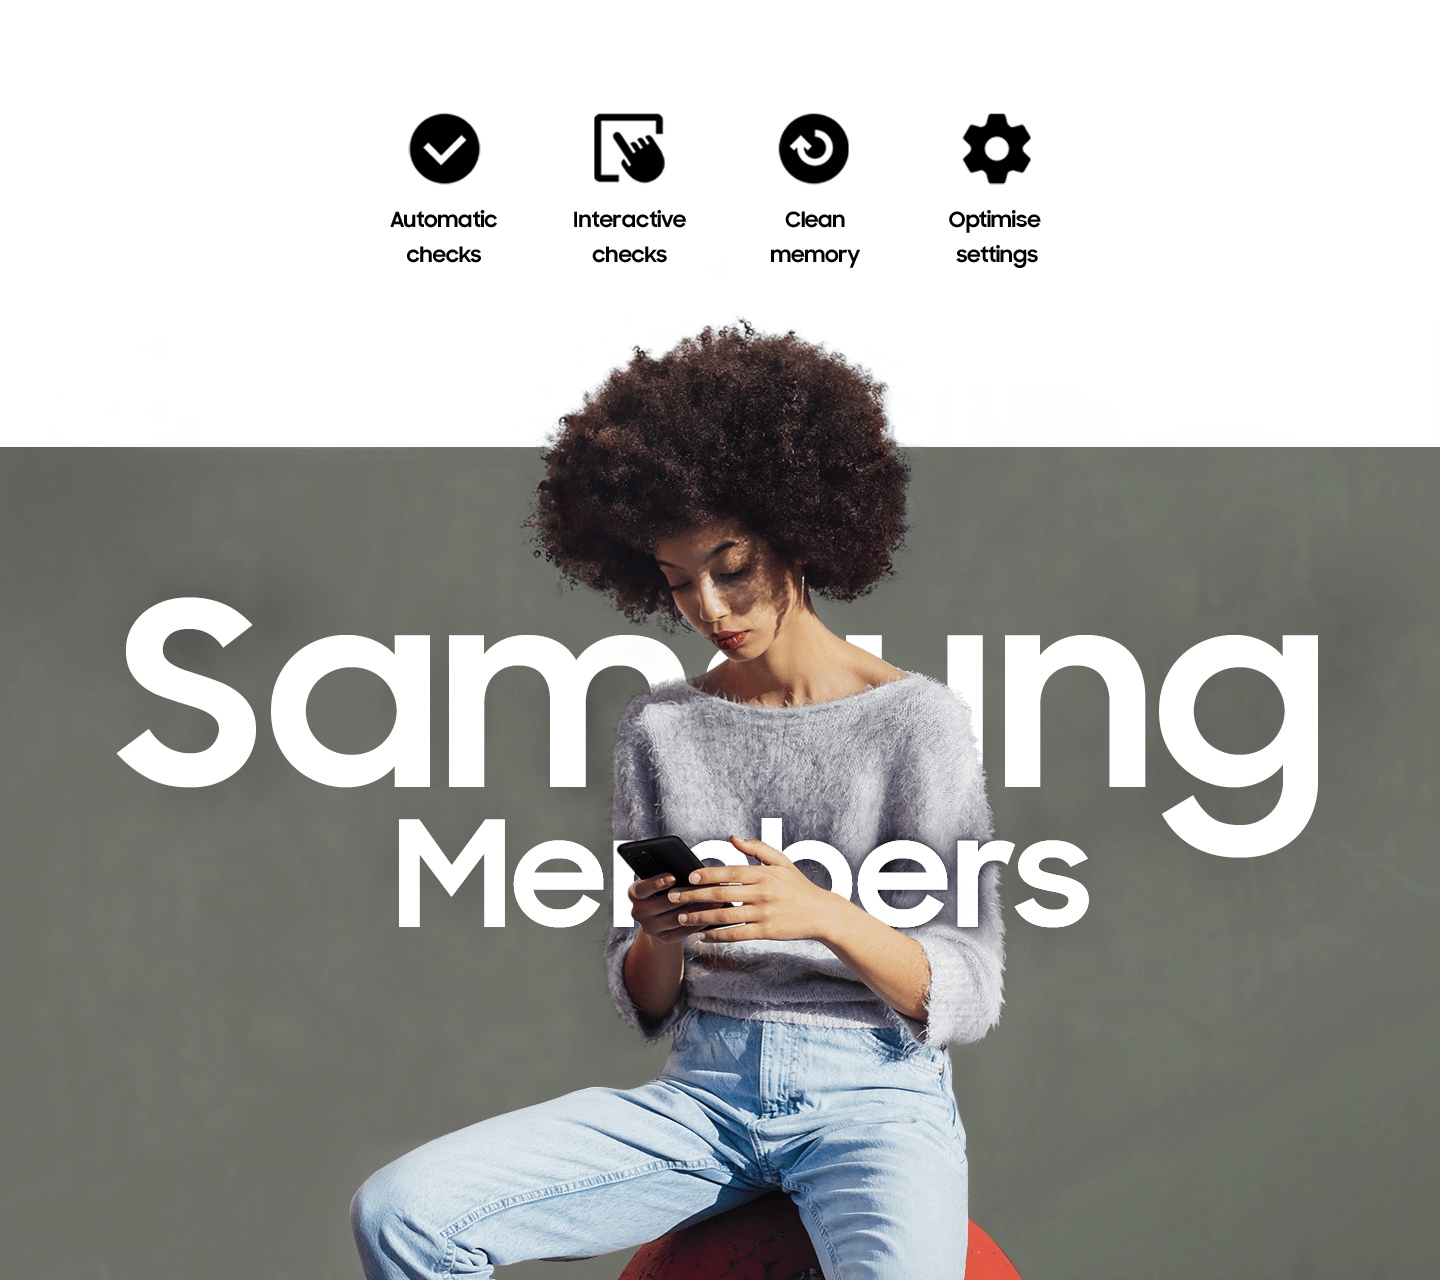 En kvinde, der sidder udenfor og bruger sin telefon.  Tekst, der siger Samsung-medlemmer, er skrevet på tværs af hende.  Automatiske tjek, interaktive tjek, rense hukommelse og optimere indstillinger.